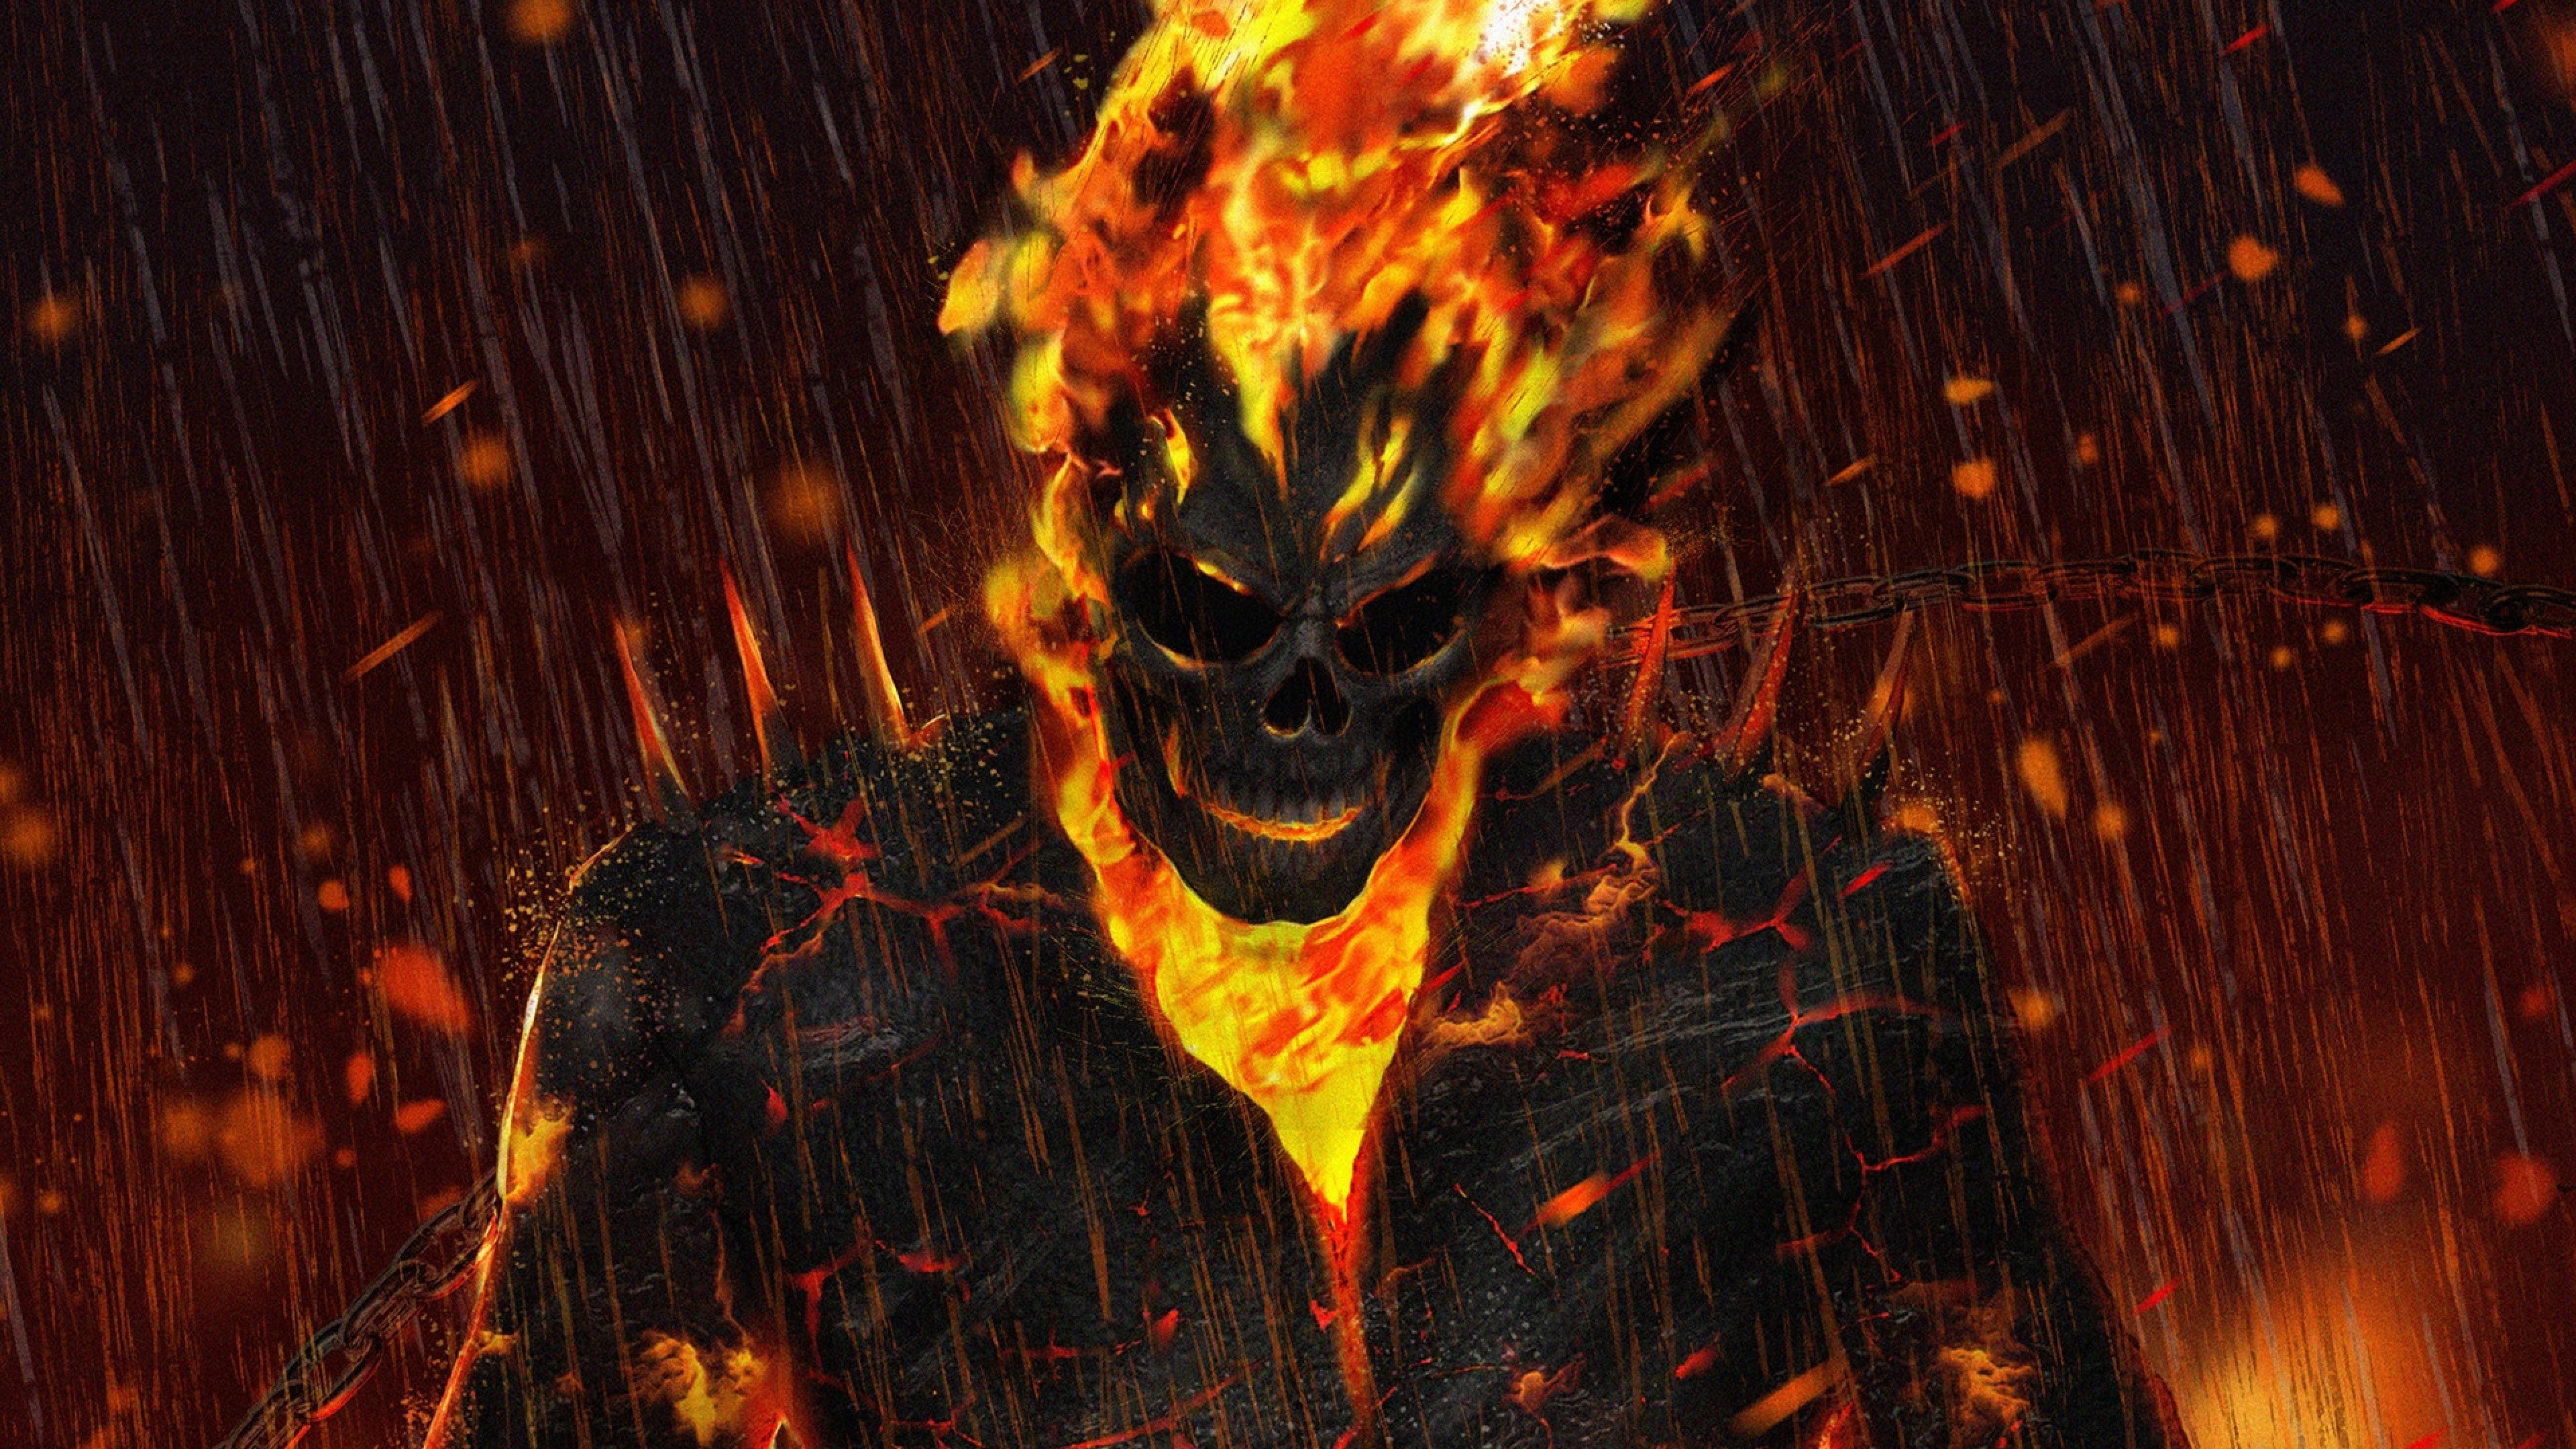 ゴーストhd壁紙1080p,悪魔,火炎,熱,架空の人物,火